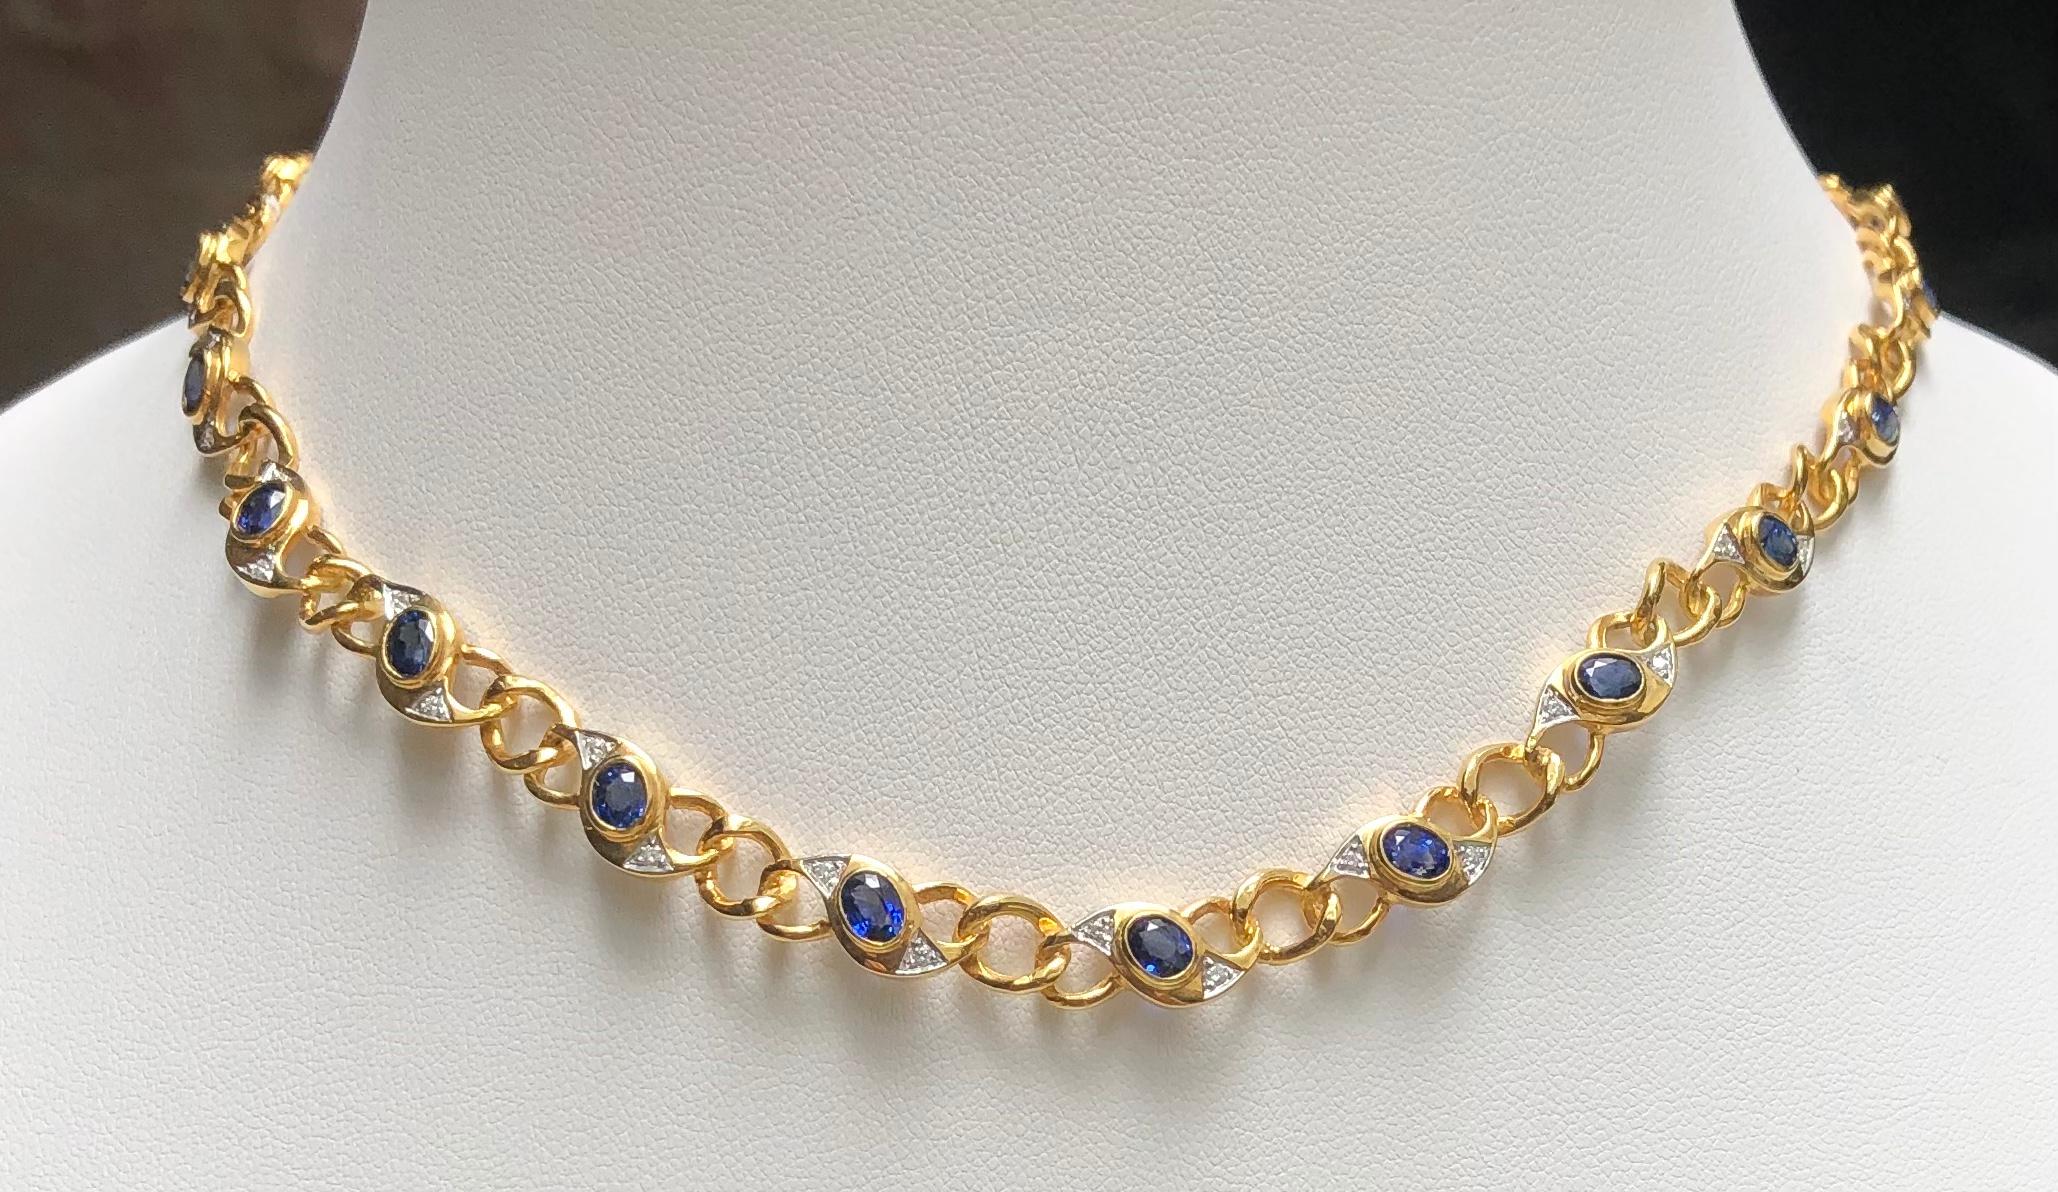 Collier de saphirs bleus de 9,18 carats et de diamants de 0,51 carat sertis dans de l'or 18 carats

Largeur :  0.8 cm 
Longueur : 42,0 cm
Poids total : 38,3 grammes

